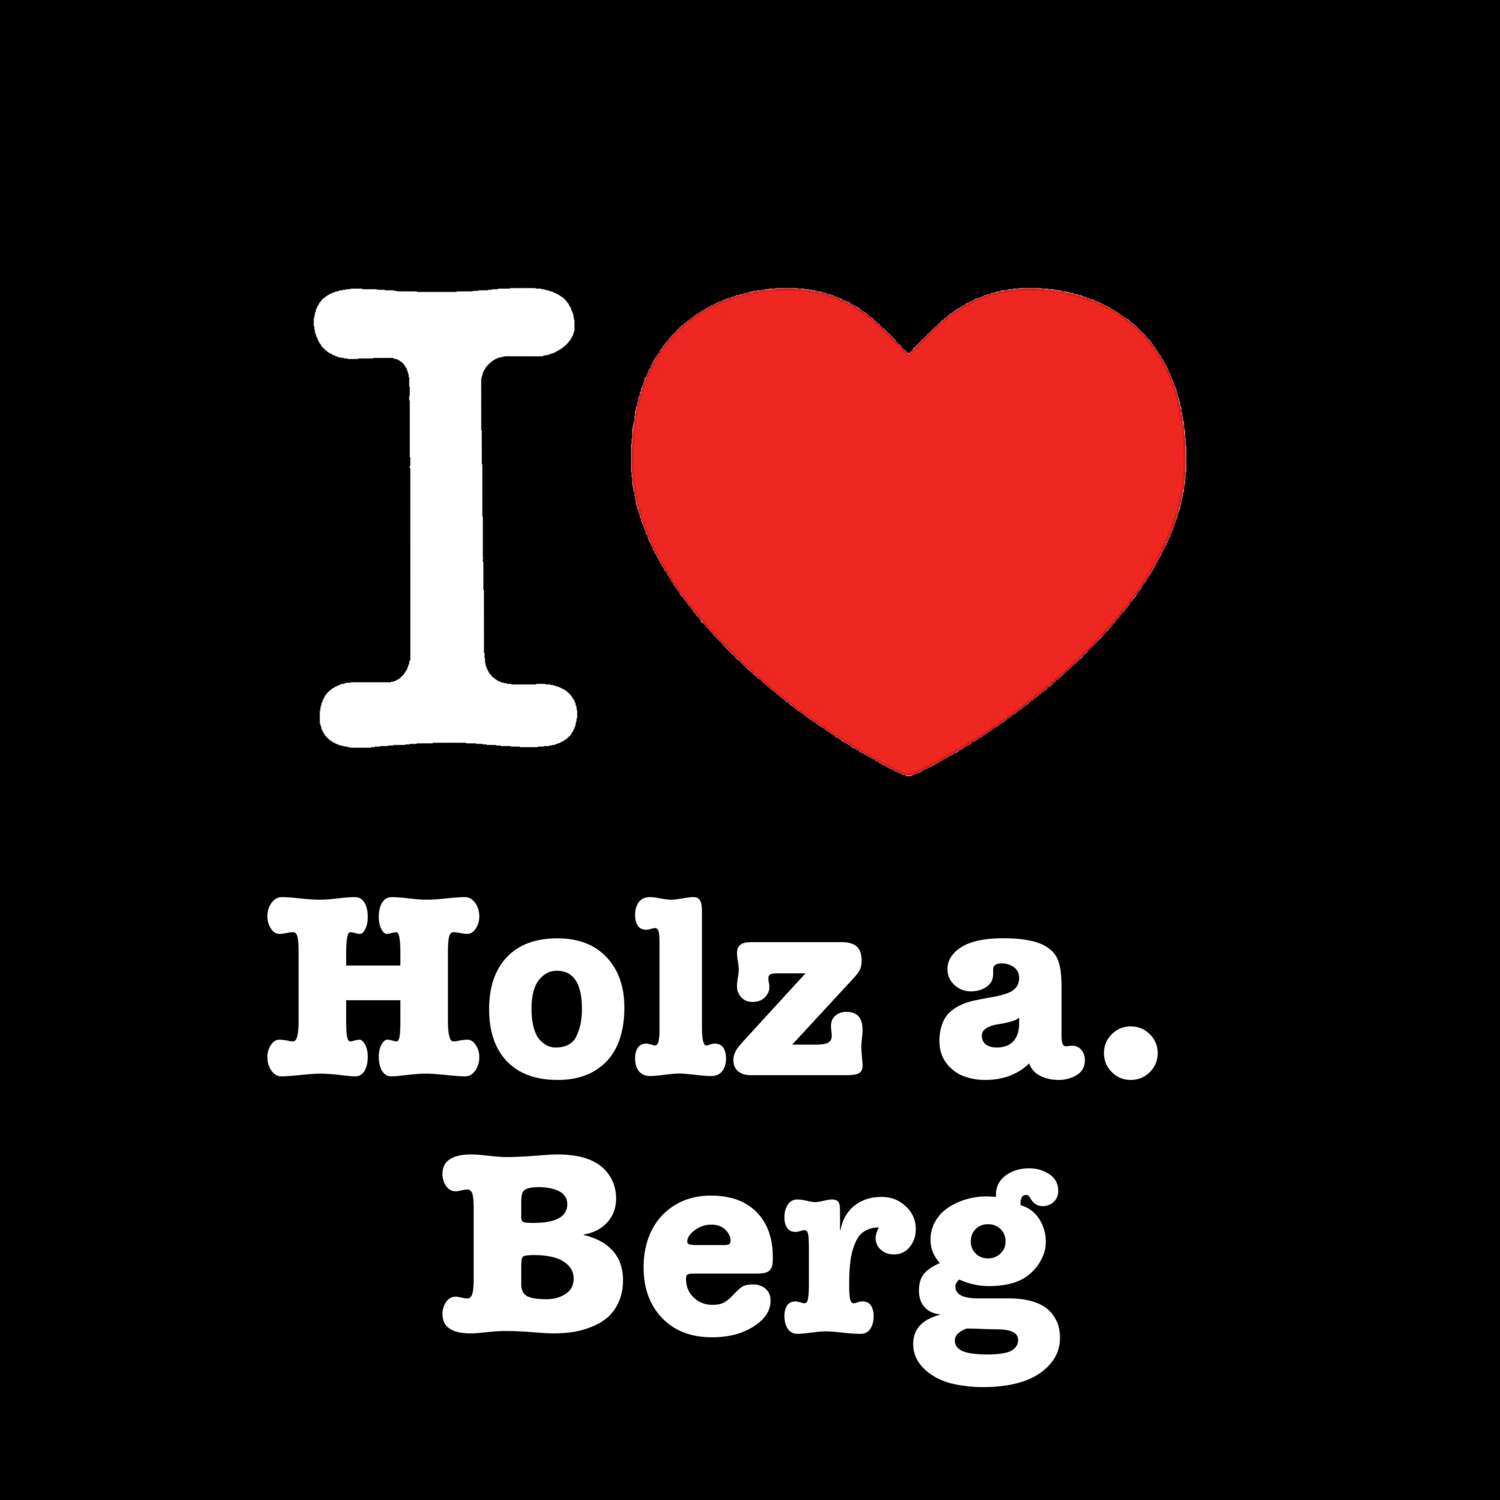 Holz a. Berg T-Shirt »I love«